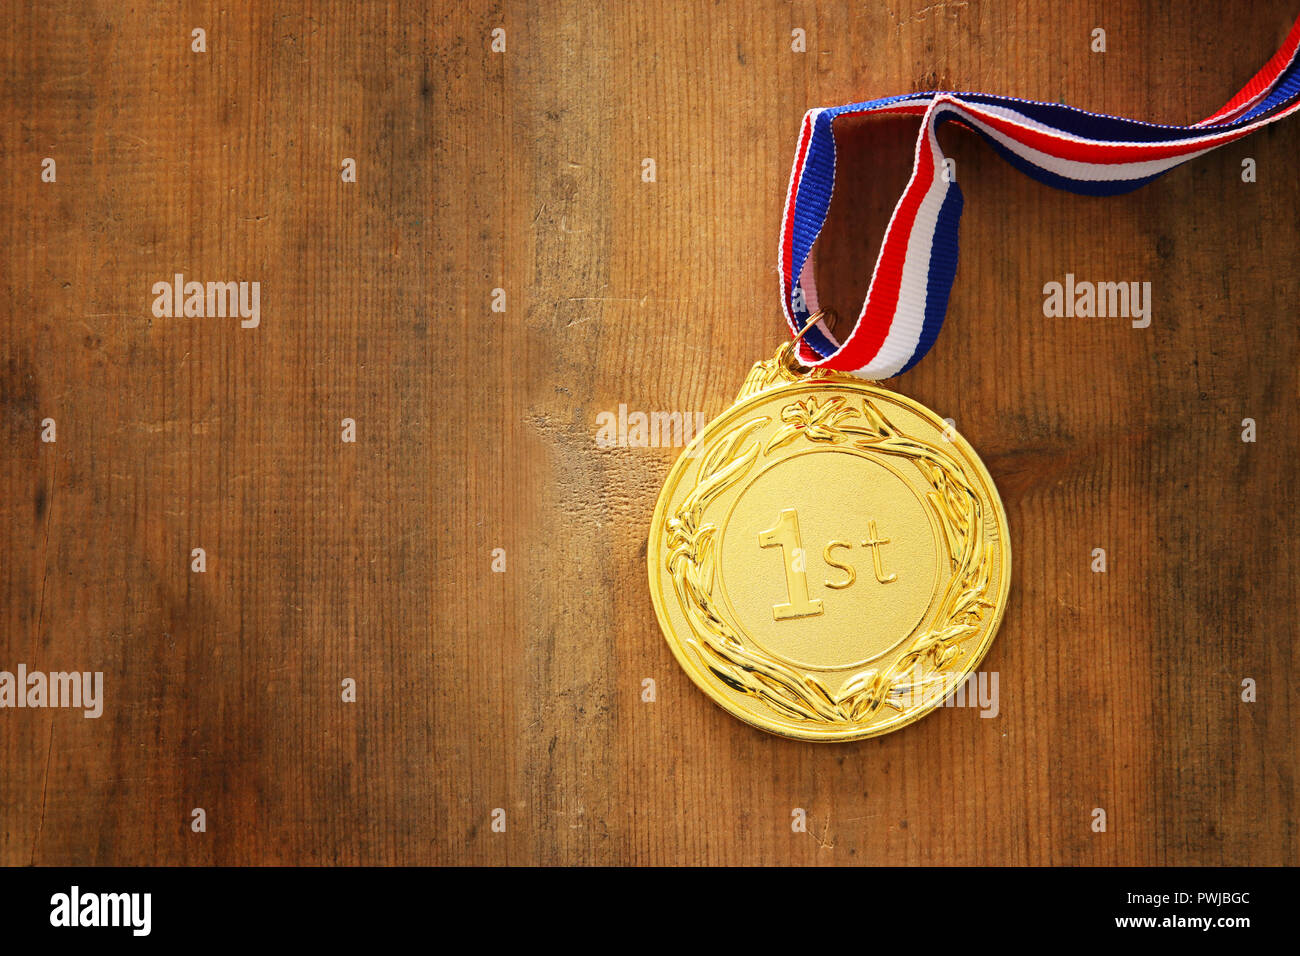 Gold Medal Images - Free Download on Freepik